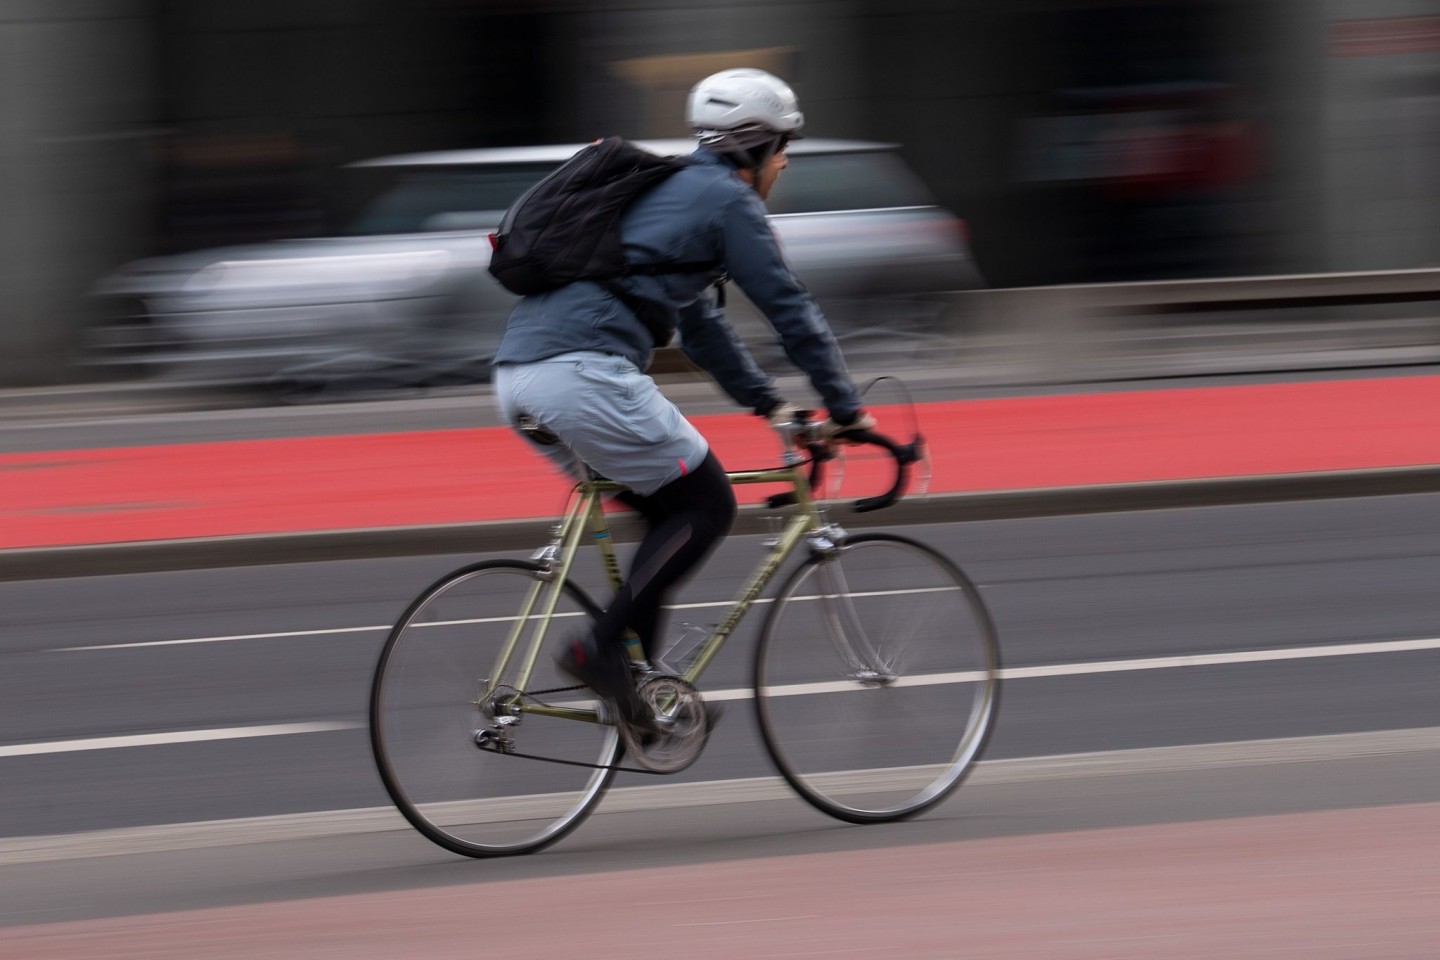 Bessere Schutzmaßnahmen im Straßenverkehr wie das Tragen von Helmen und Anschnallgurten könnten jährlich Hundertausende Leben retten.